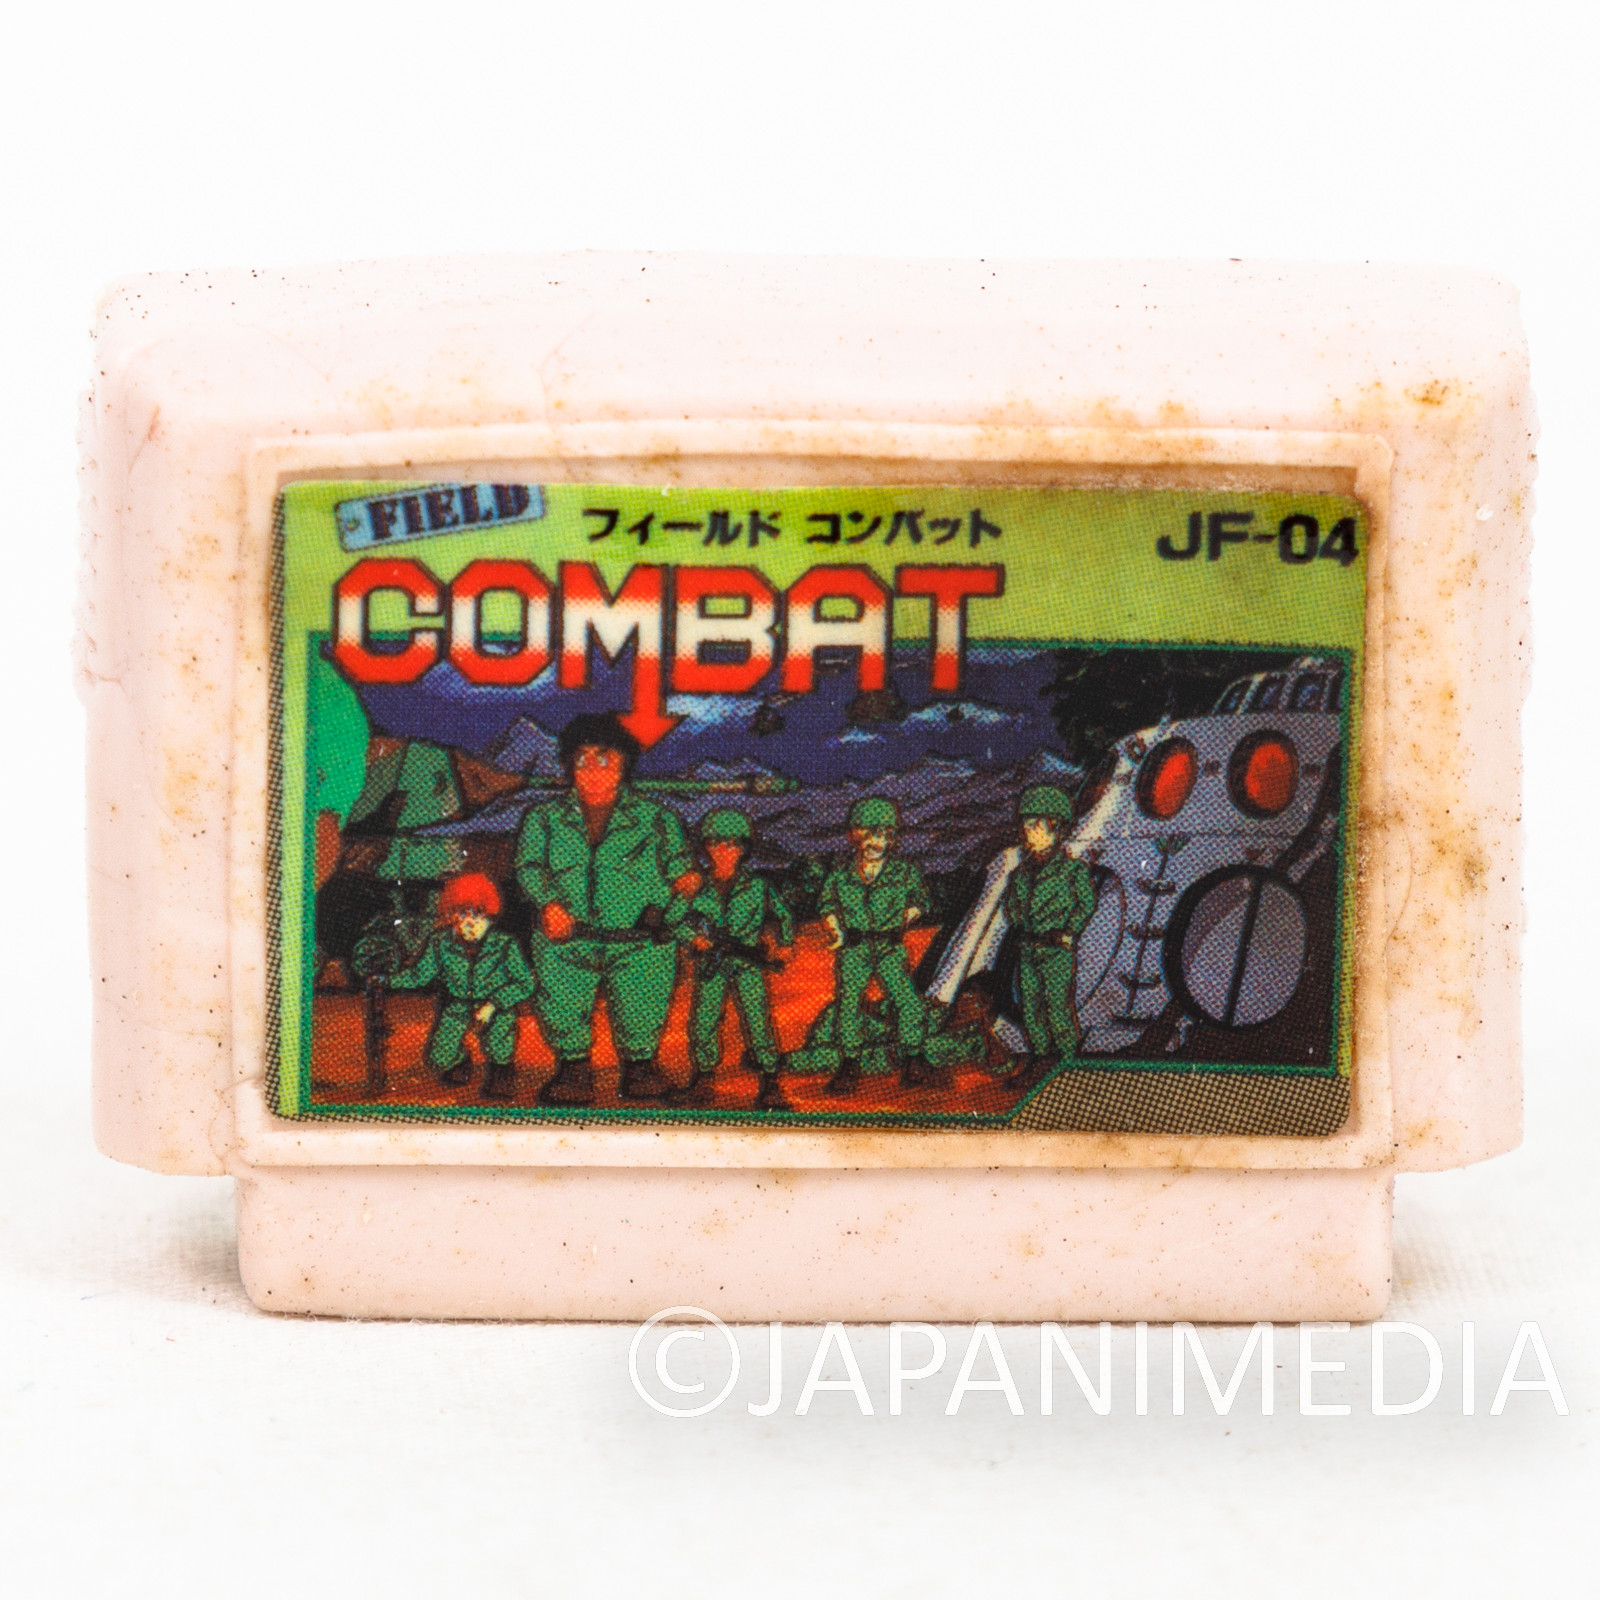 Field Combat Cassette Mini Eraser AMADA JALECO FAMICOM NES Nintendo